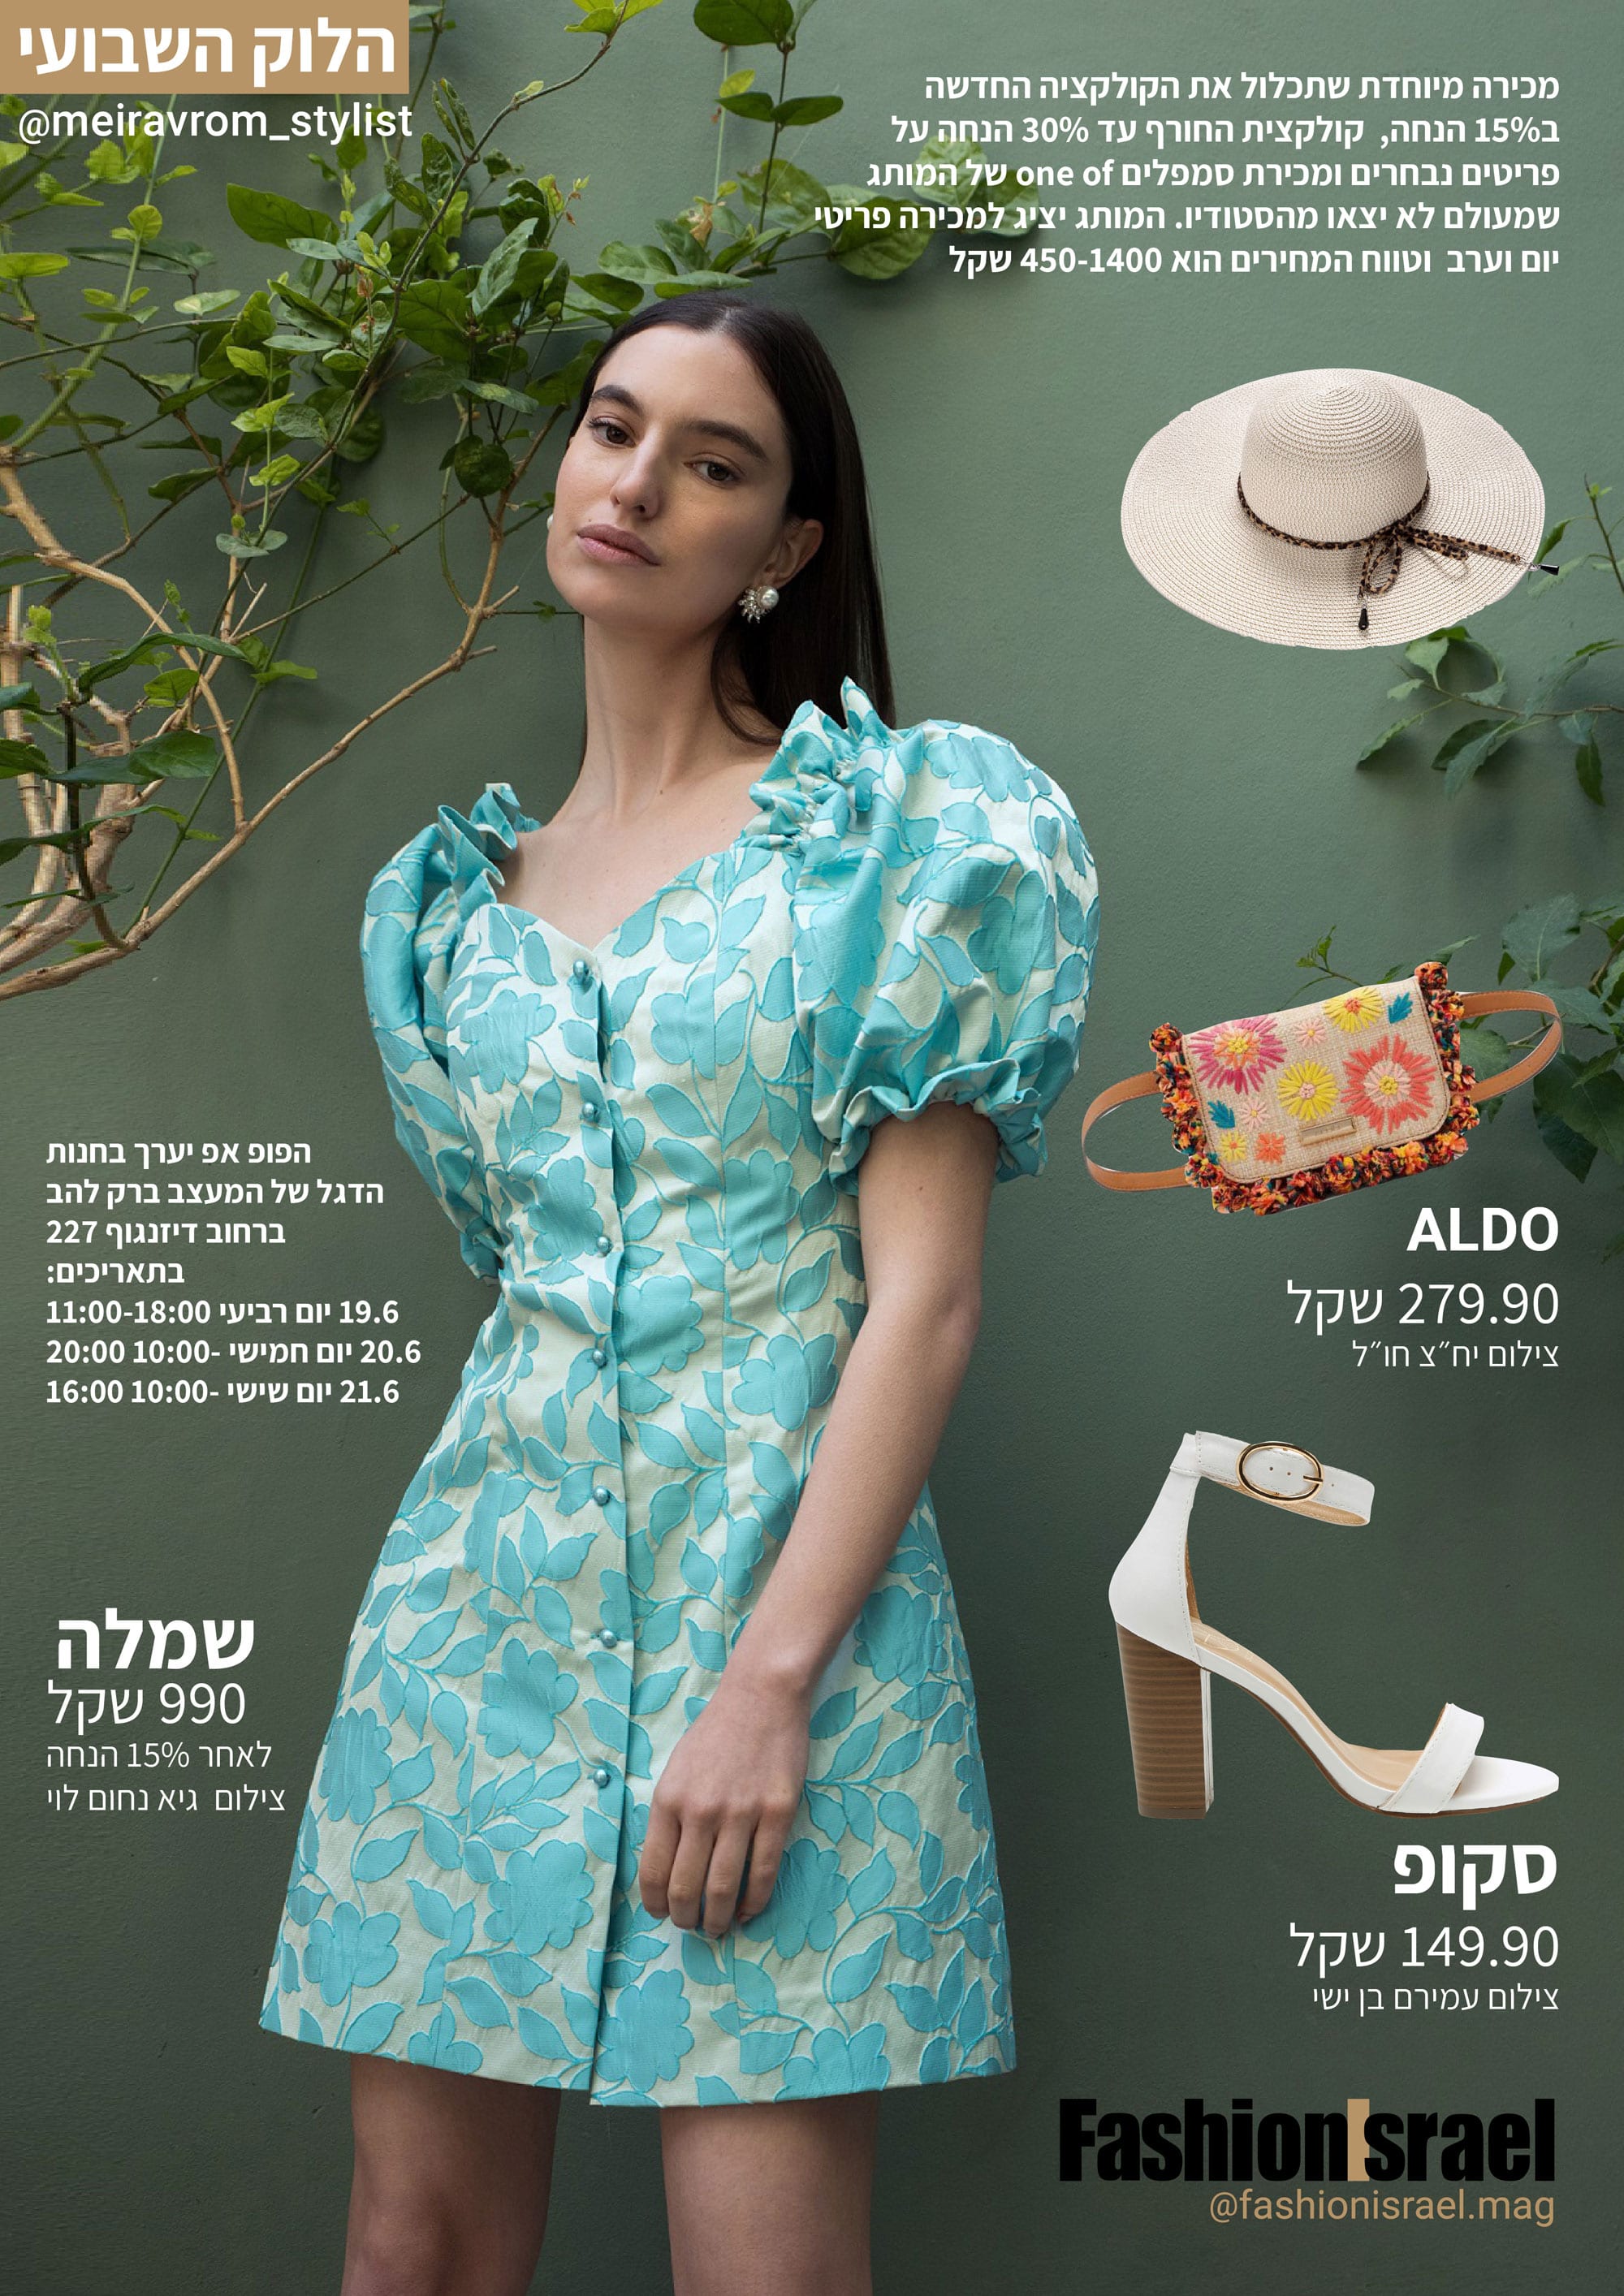 שמלה קטנה פרחונית ורגליים שזופות זה כל מה שתצטרכי הקיץ הזה. את השמלה הפרחונית הזאת תמצאו גם במכירת הפופ אפ של המעצבת רוחמה קזז שתתקיים בין התאריכים 19.6-21.6 בדיזינגוף 227. צילום גיא נחום לוי Fashion Israel - מגזין אופנה של ישראל